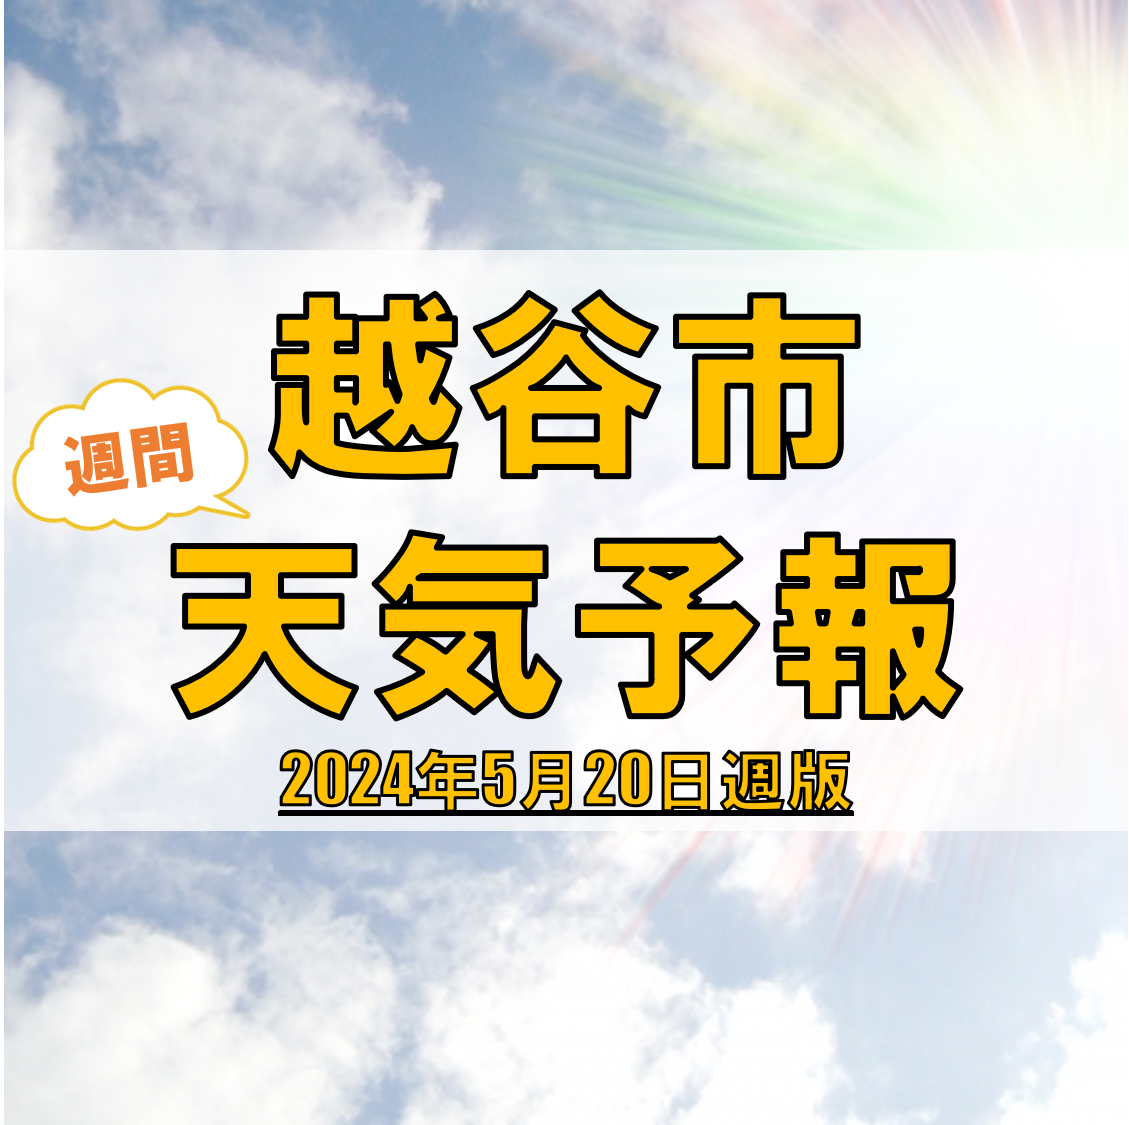 越谷市の天気 週間予報【2024年5月20日週】